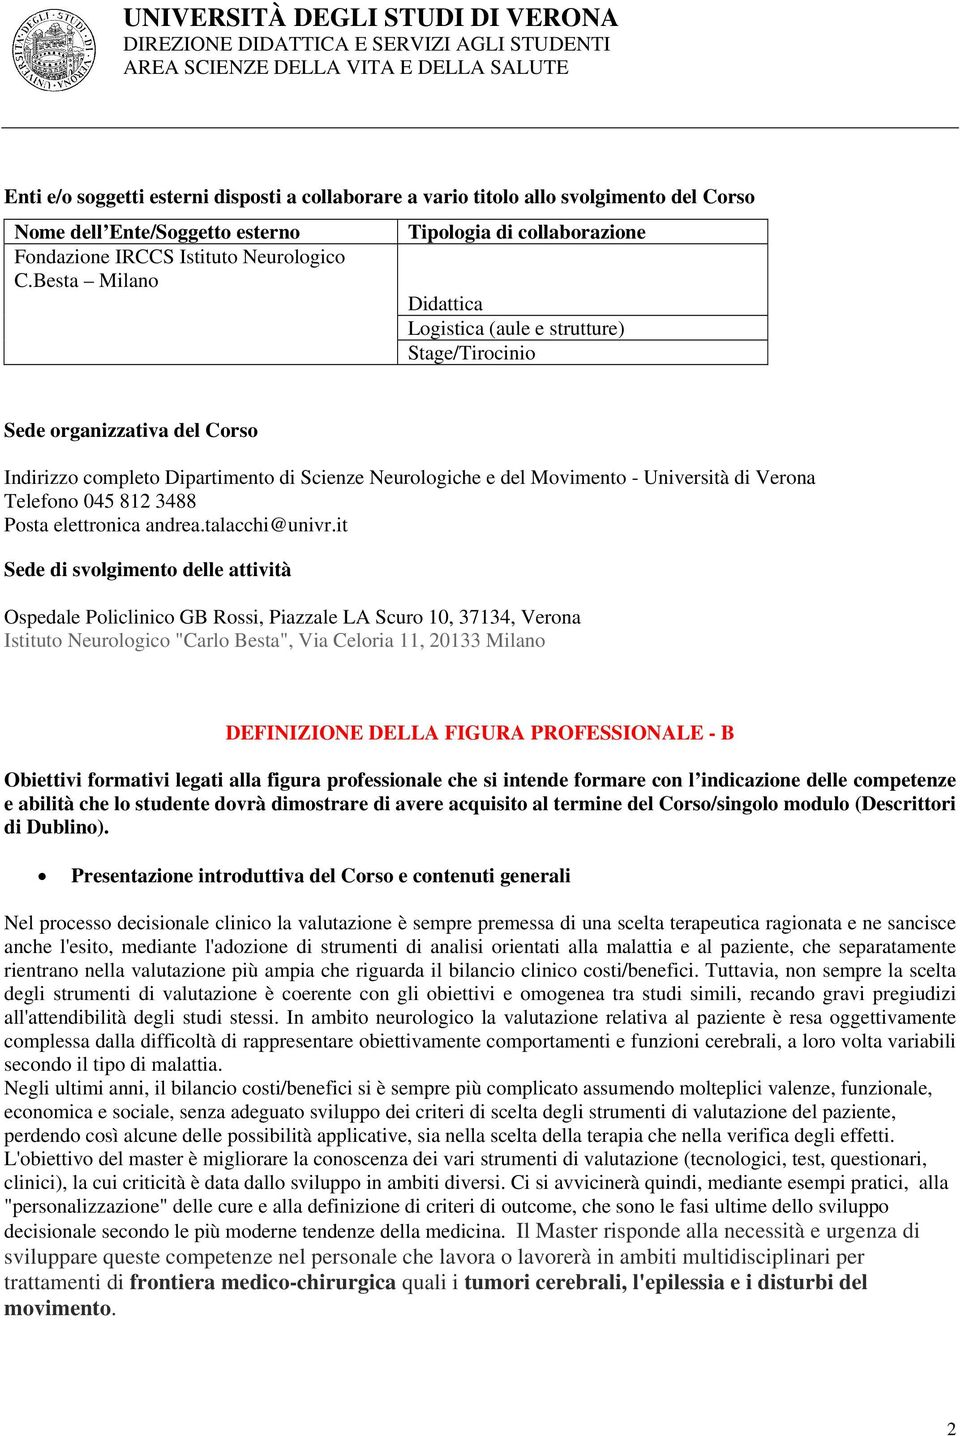 Università di Verona Telefono 04 812 3488 Posta elettronica andrea.talacchi@univr.